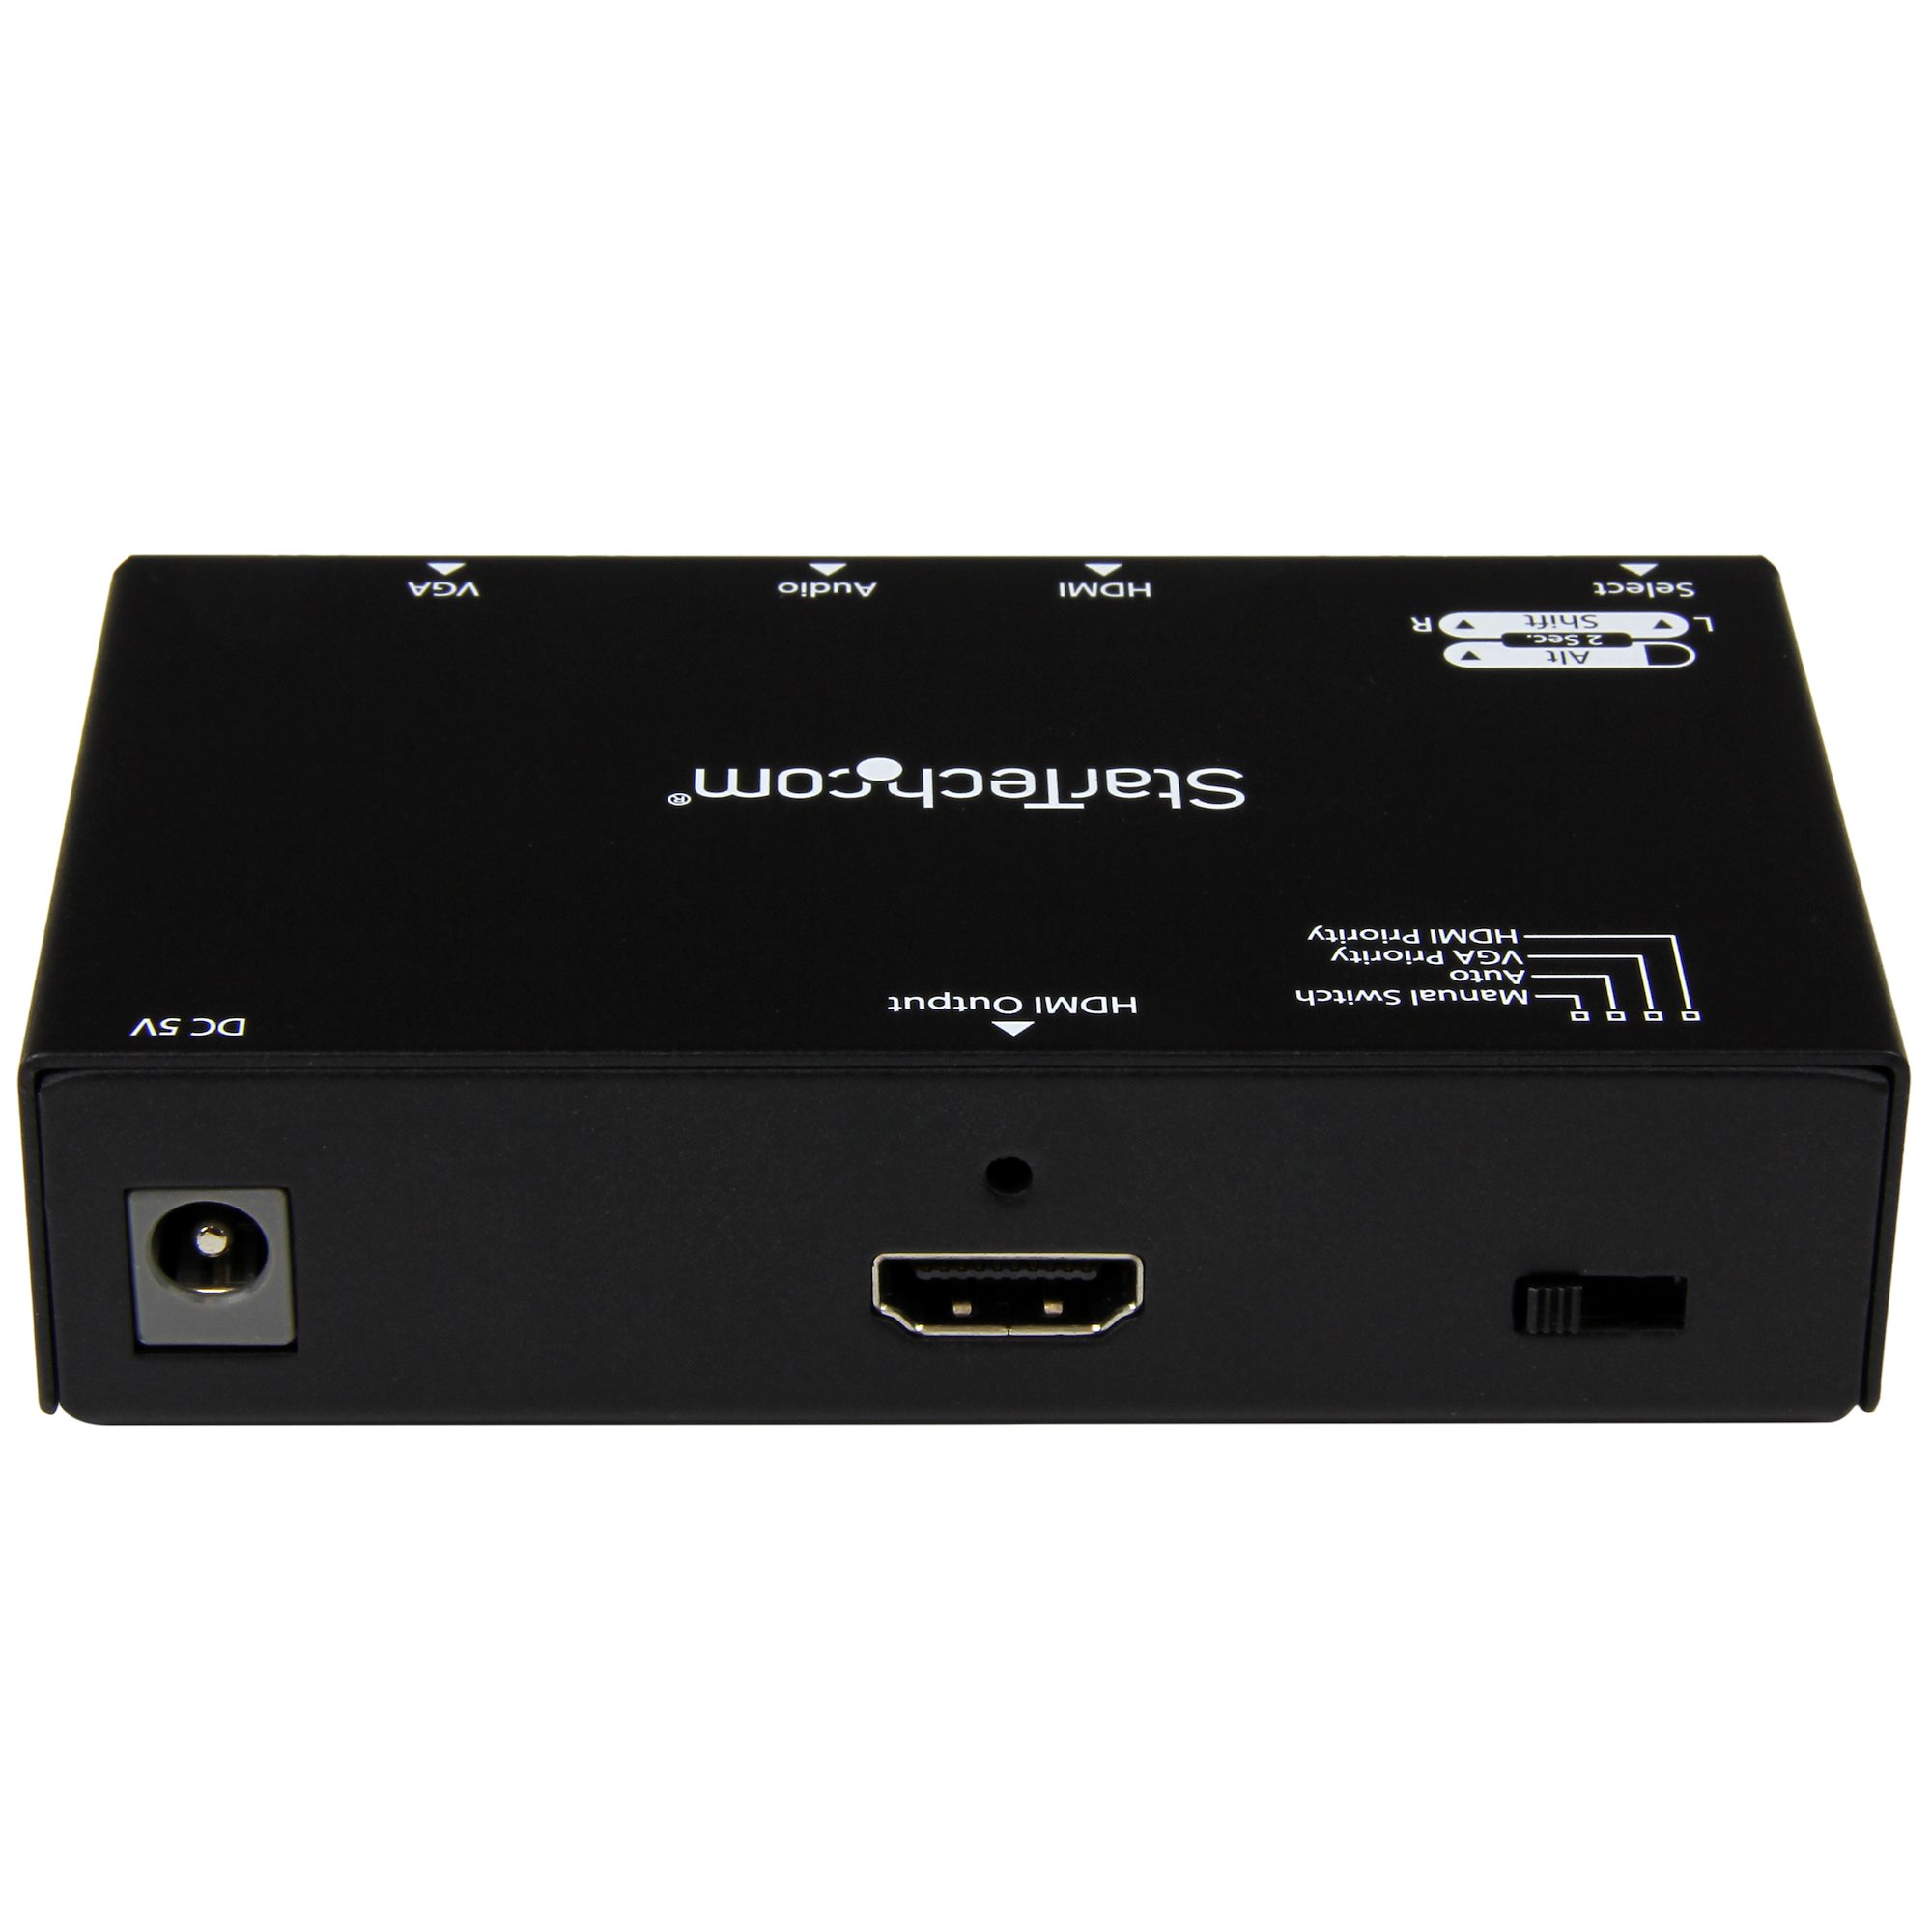 2入力(HDMI/VGA)1出力(HDMI)対応ビデオ切替器スイッチャー 自動優先切替機能搭載 1080p VS 